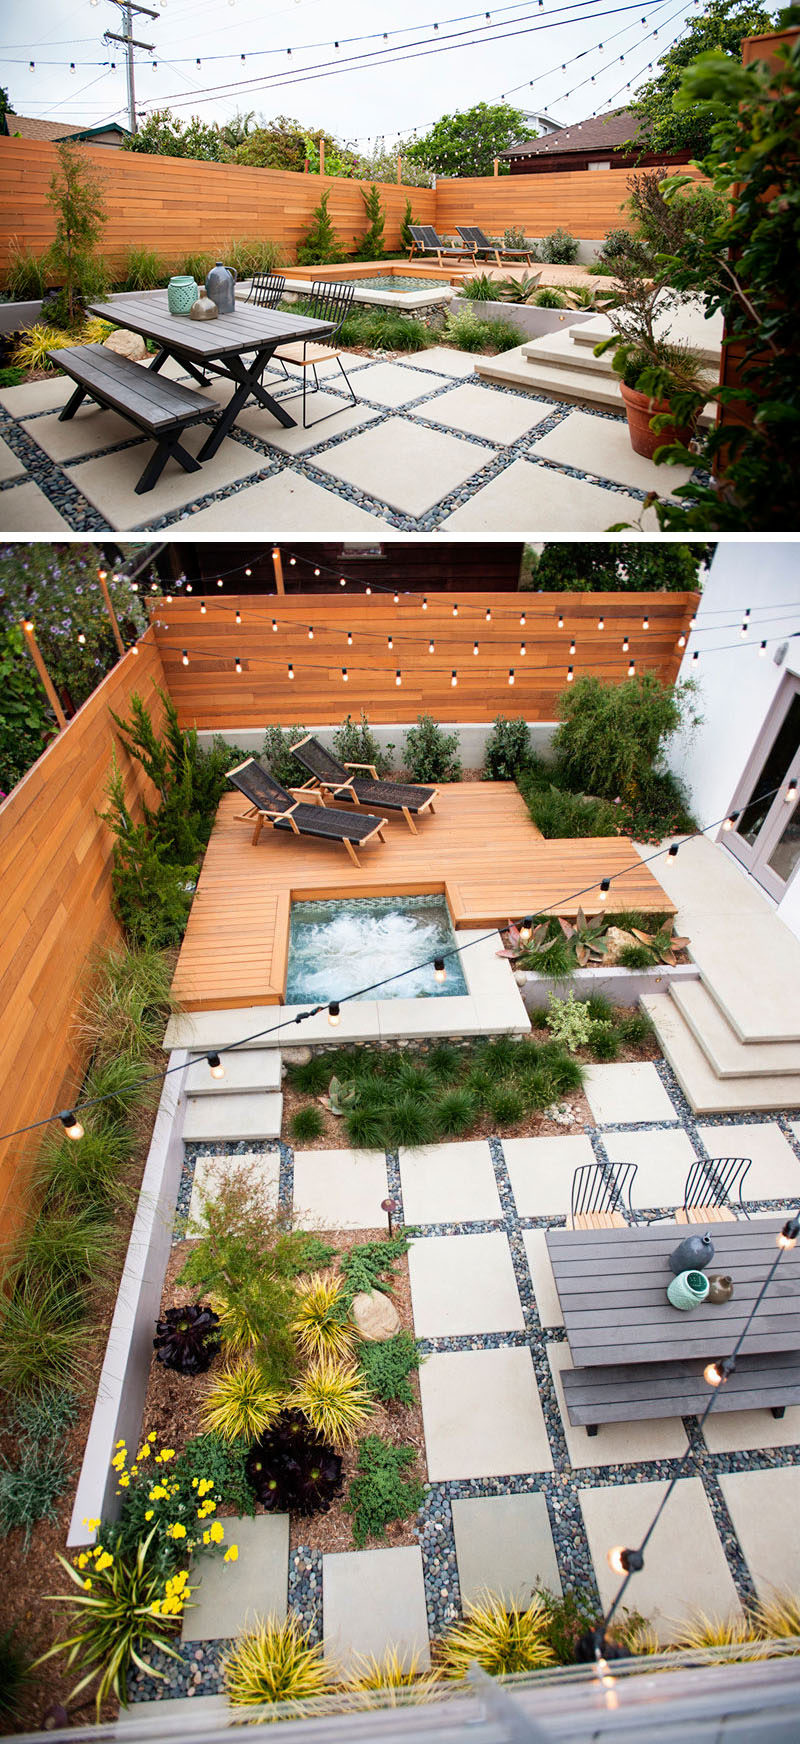 Landscaping Design Ideas - 11 Backyards Designed For ...